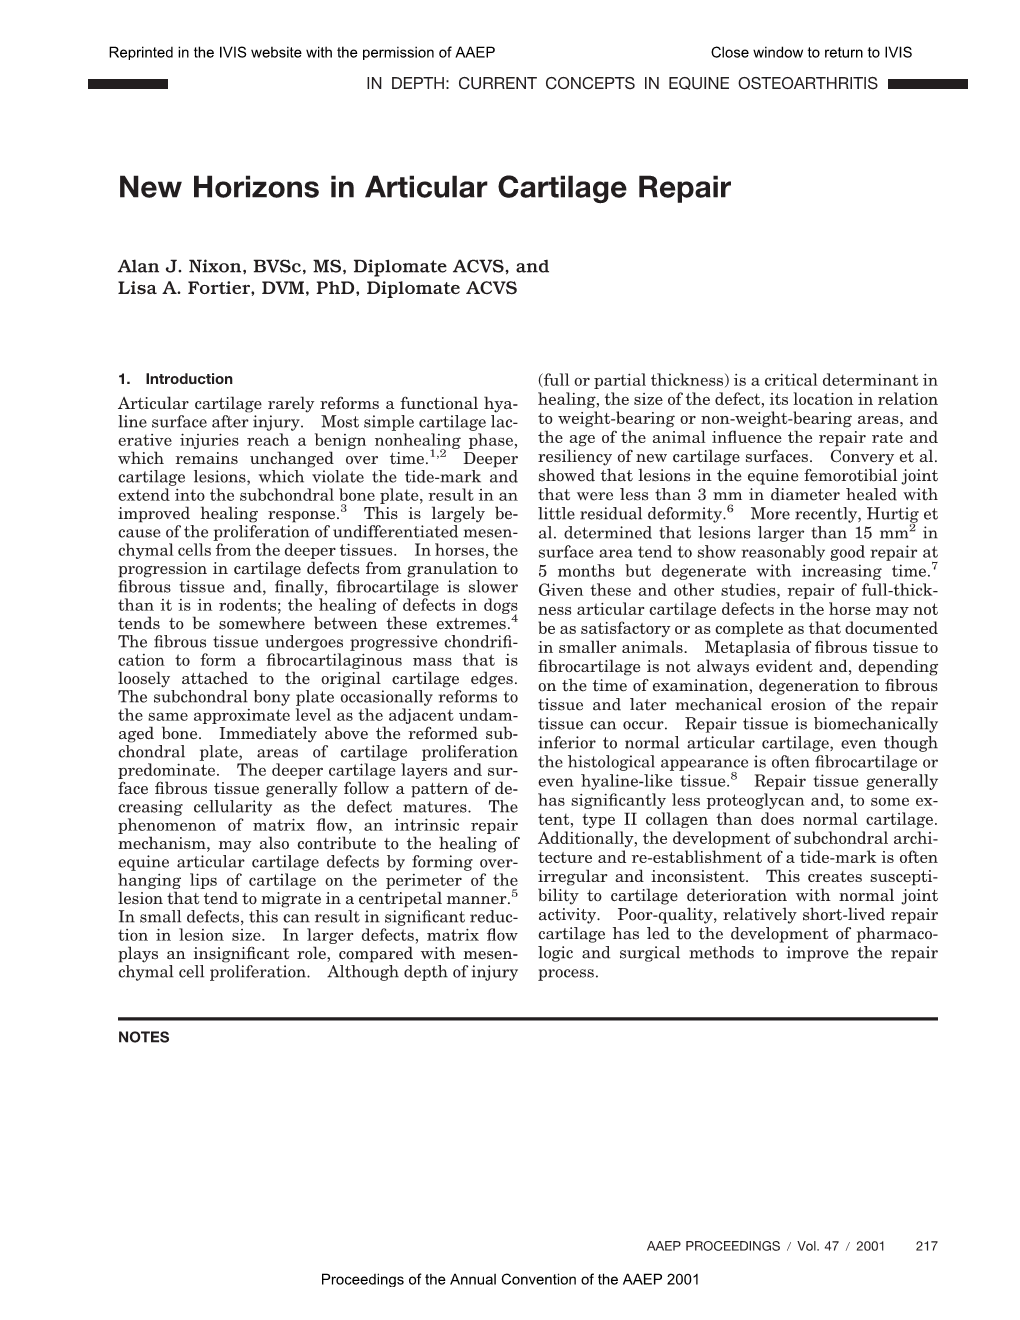 New Horizons in Articular Cartilage Repair